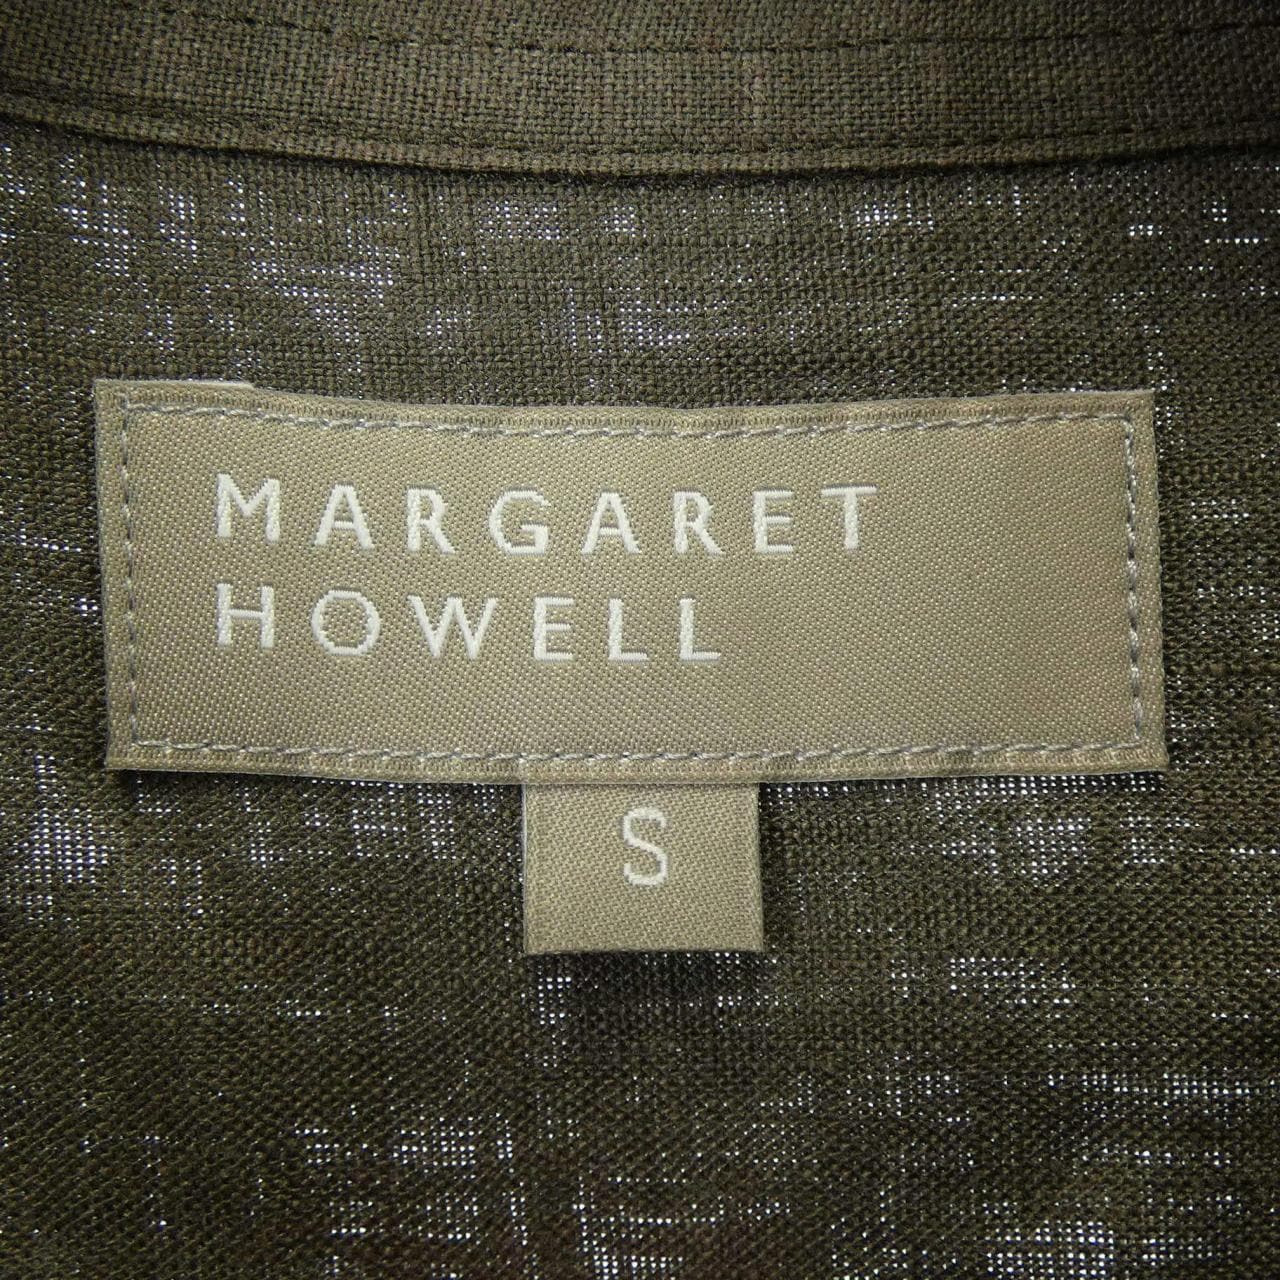 Margaret Howell Margaret Howell shirt